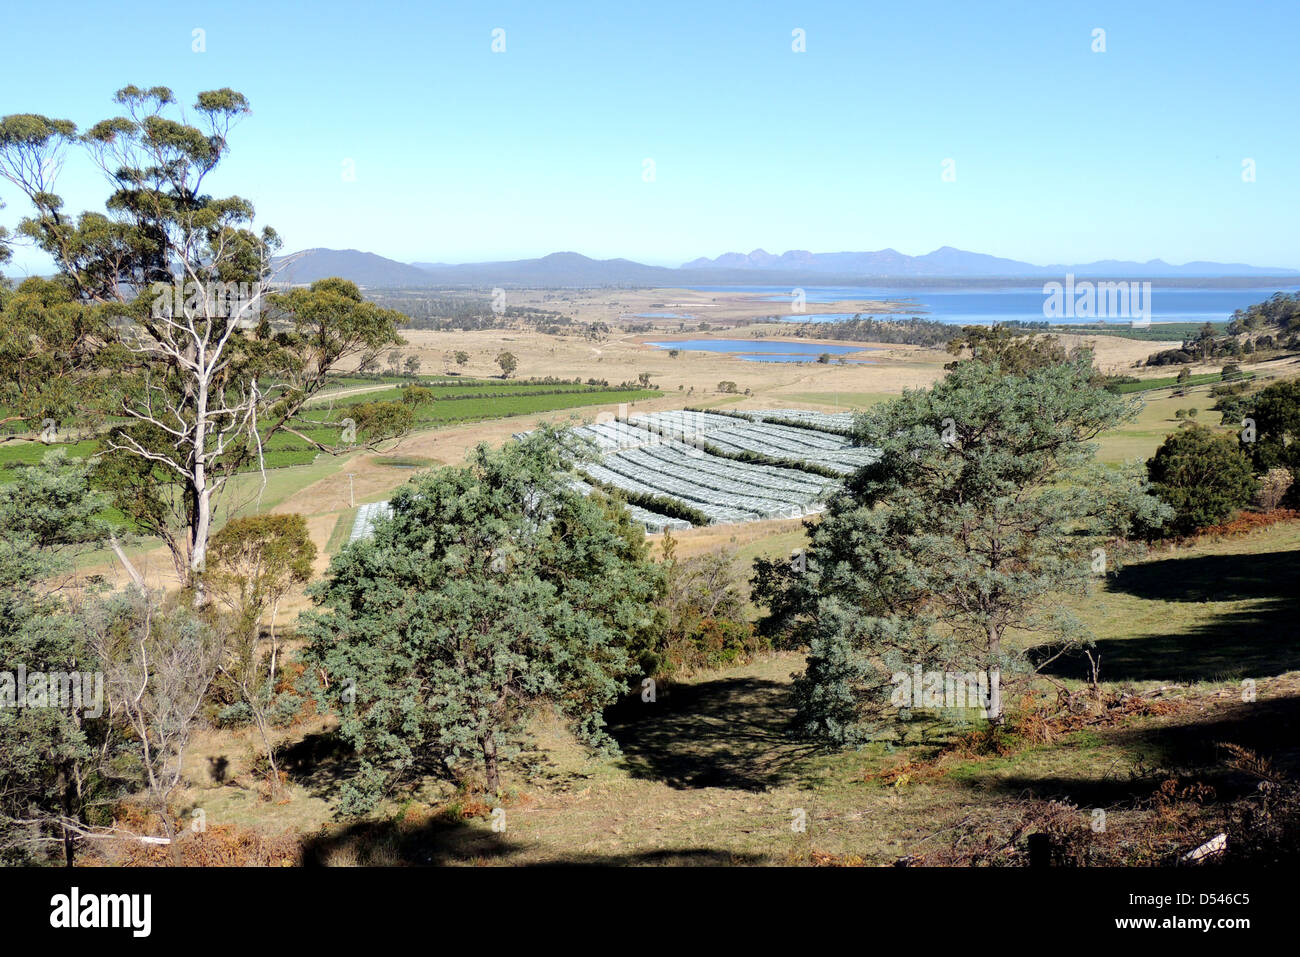 MAUSER LAGUNE IMPORTANT BIRD AREA. Fernsicht auf die Feuchtgebiete im Osten Tasmaniens in der Nähe von Bicheno. Foto Tony Gale Stockfoto